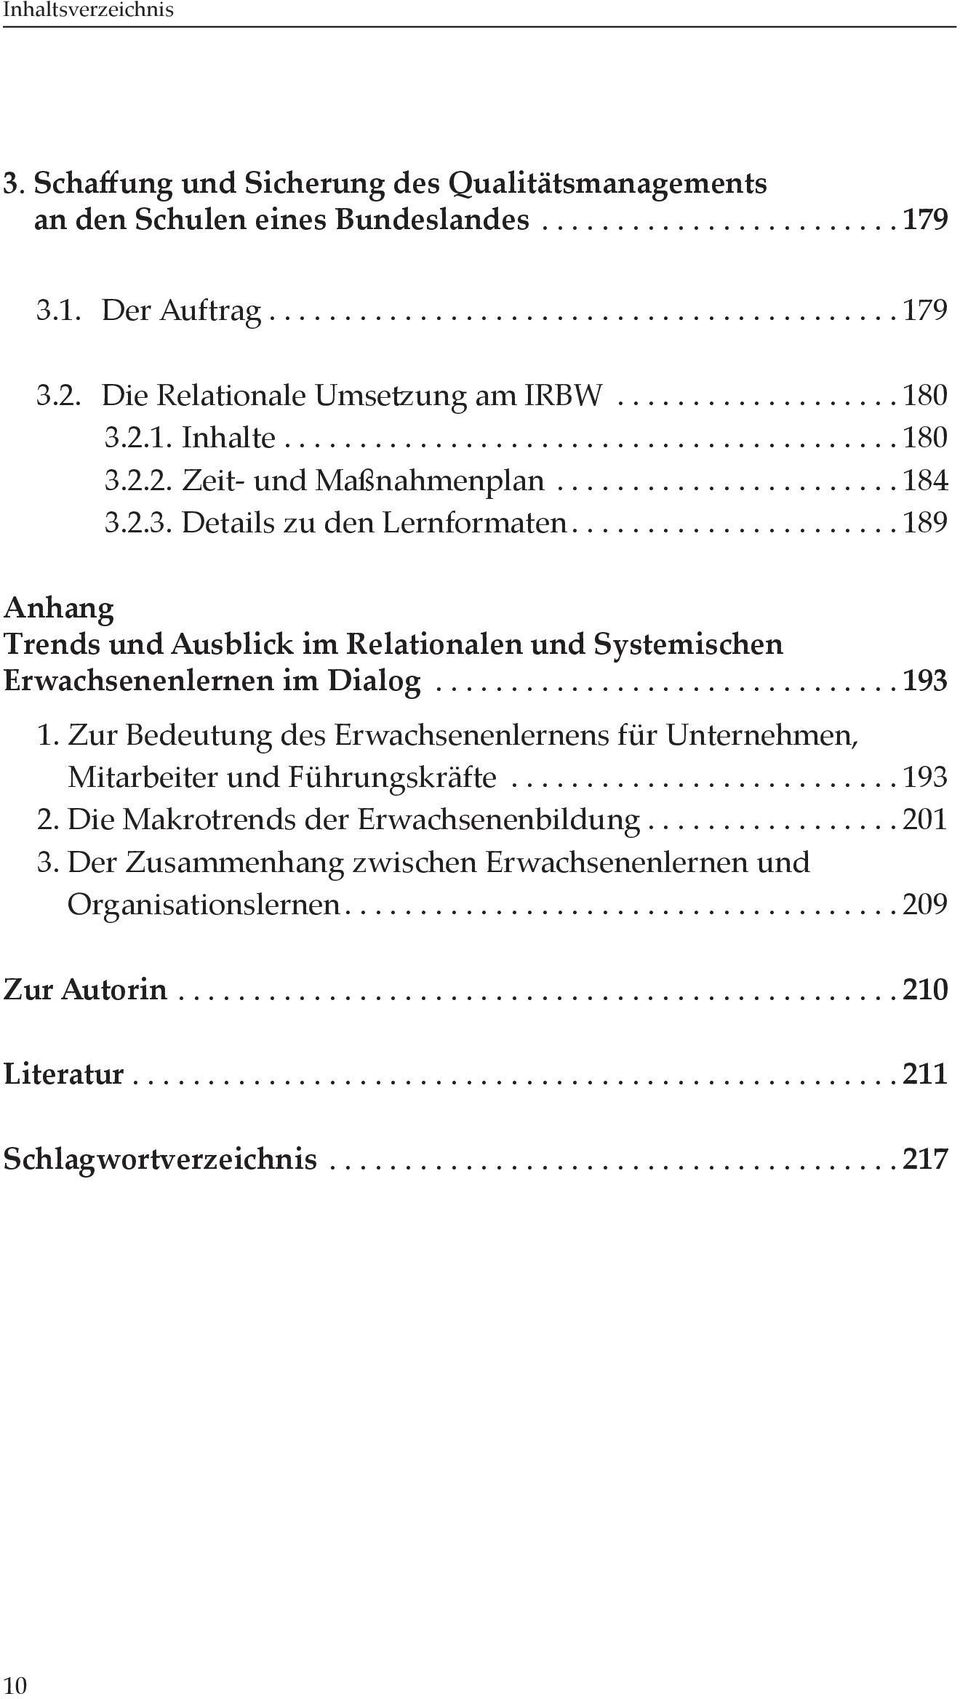 ..189 Anhang Trends und Ausblick im Relationalen und Systemischen Erwachsenenlernen im Dialog...193 1.